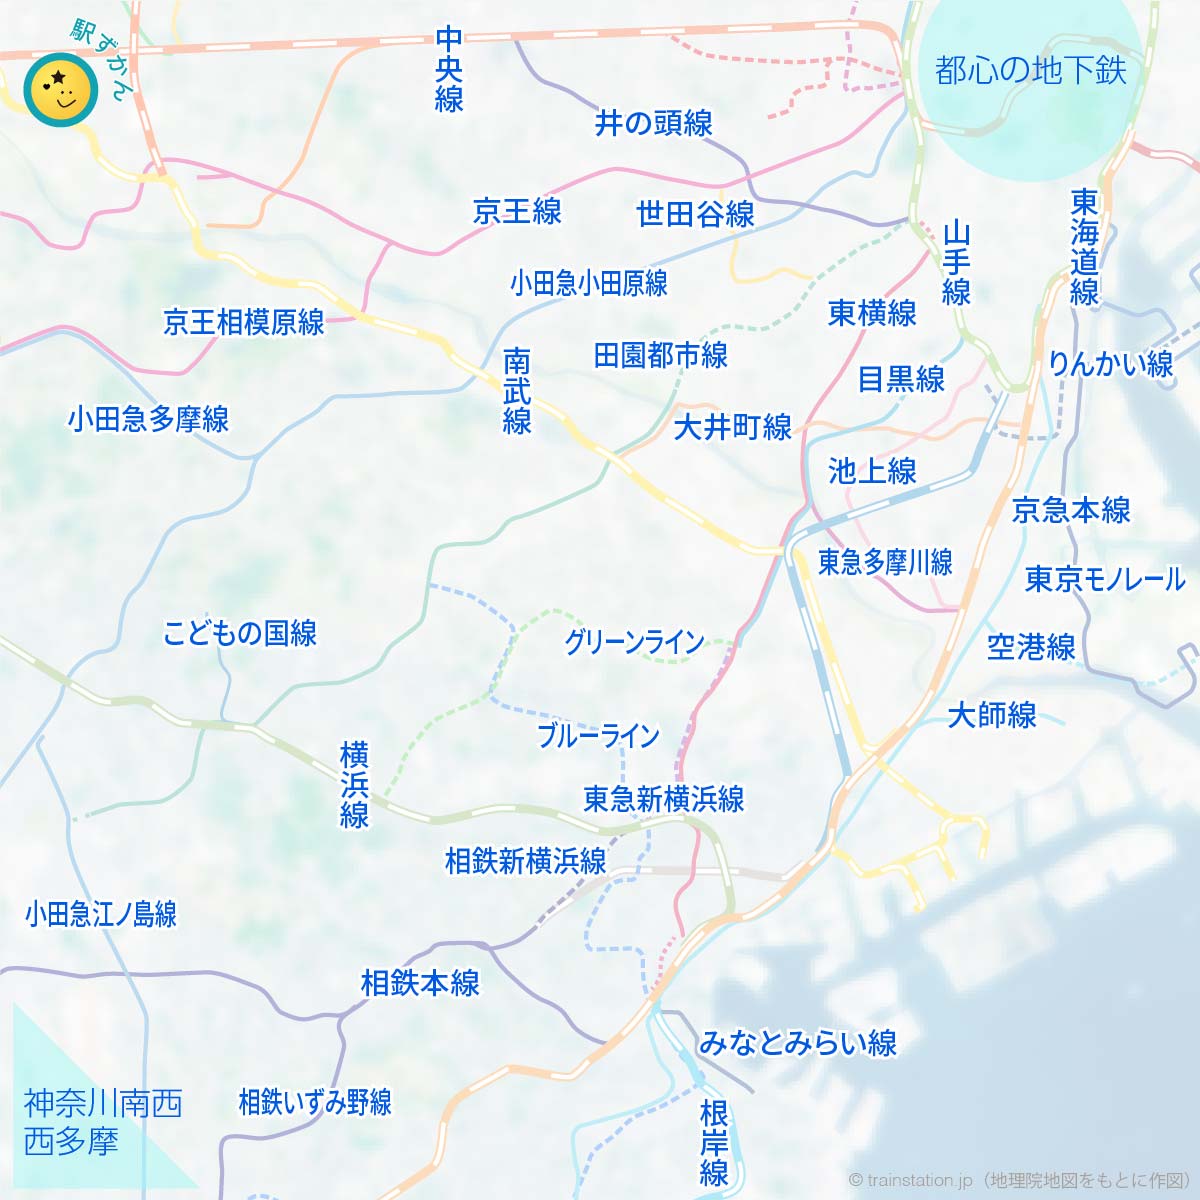 東京圏の鉄道路線図